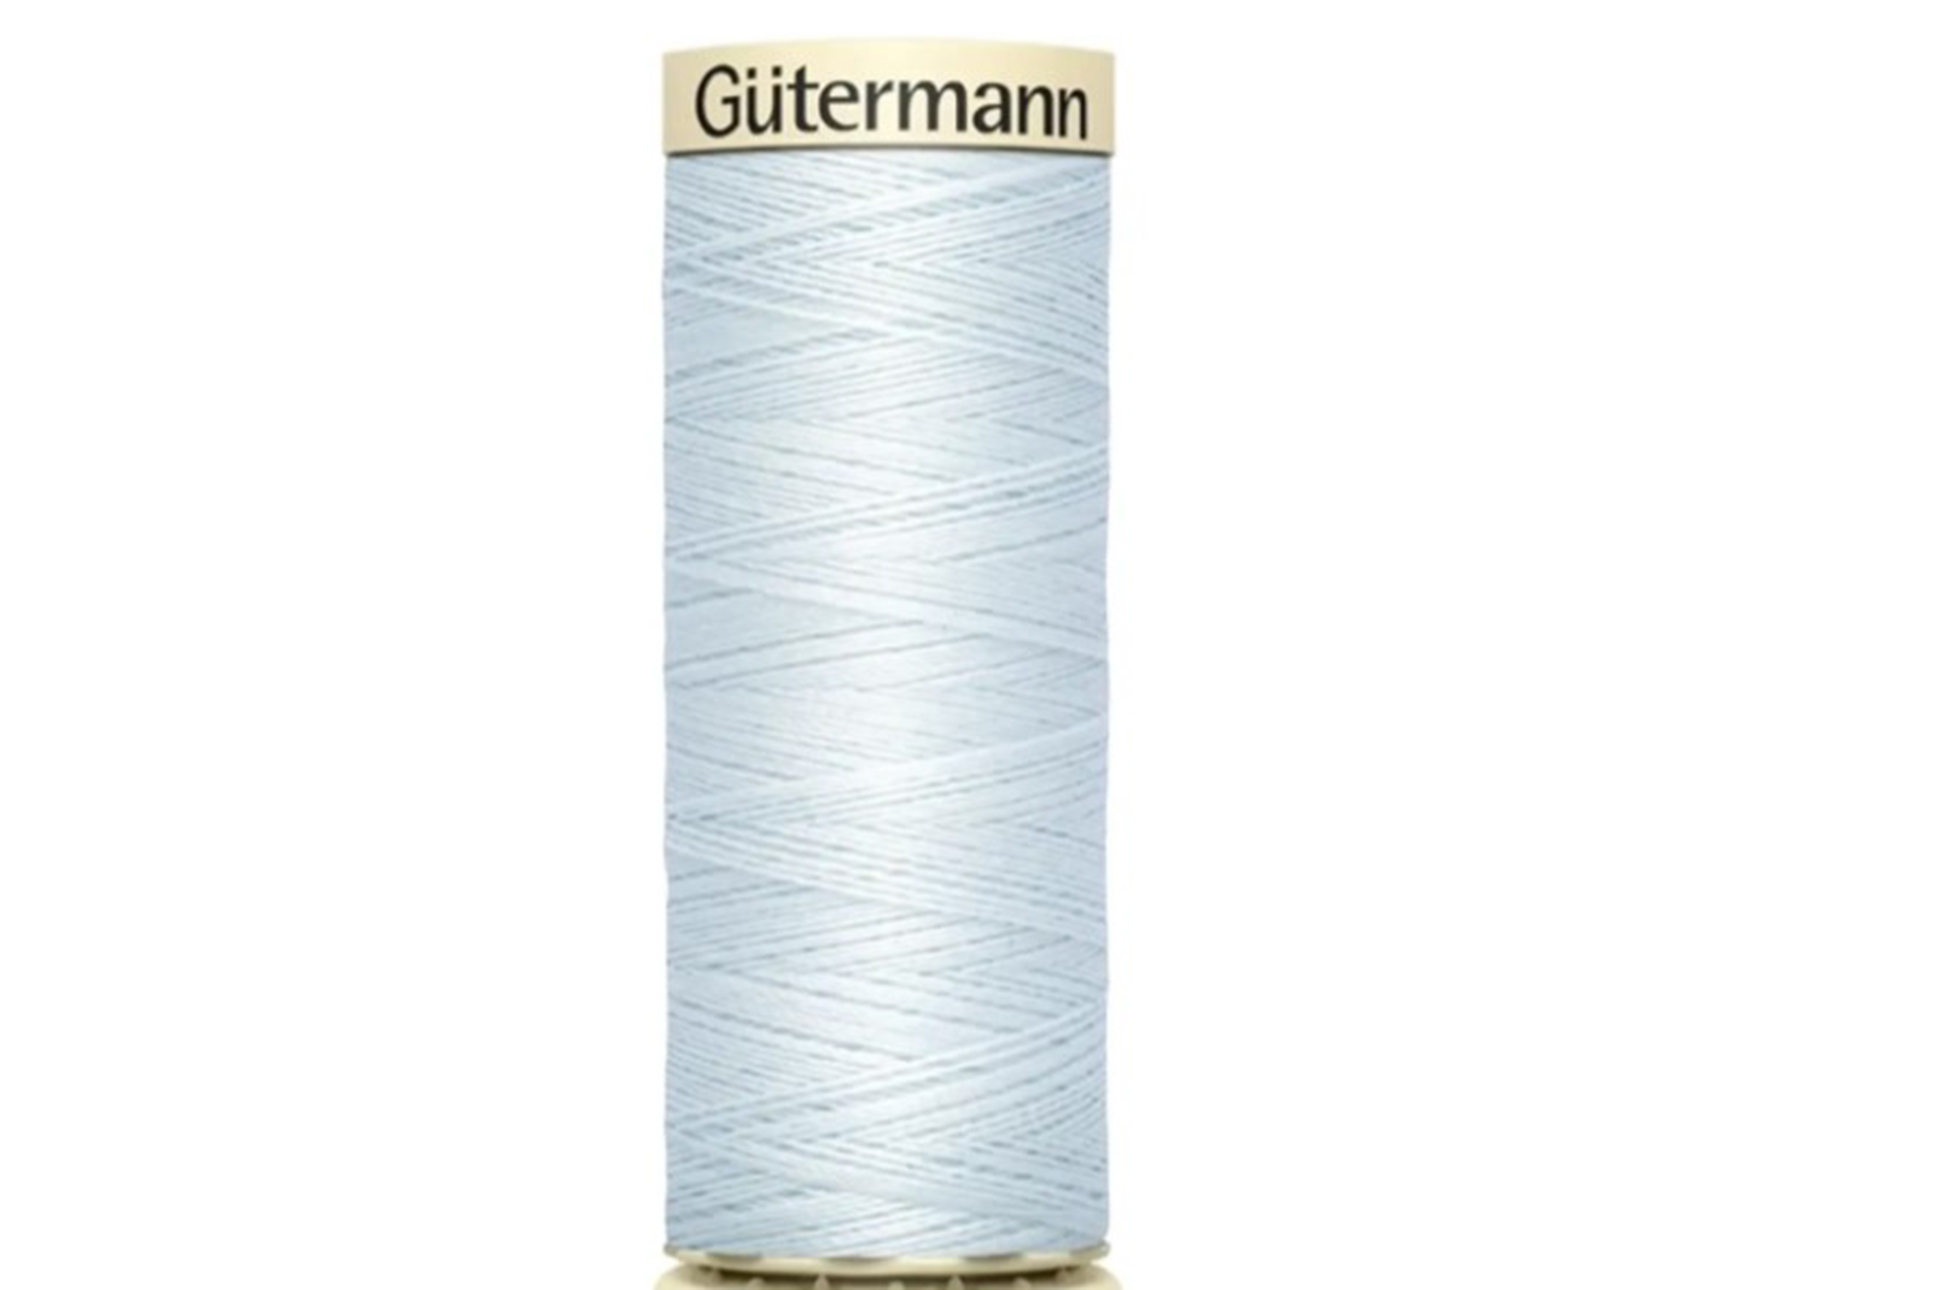 Gütermann Allesnähgarn 250m, hellblau